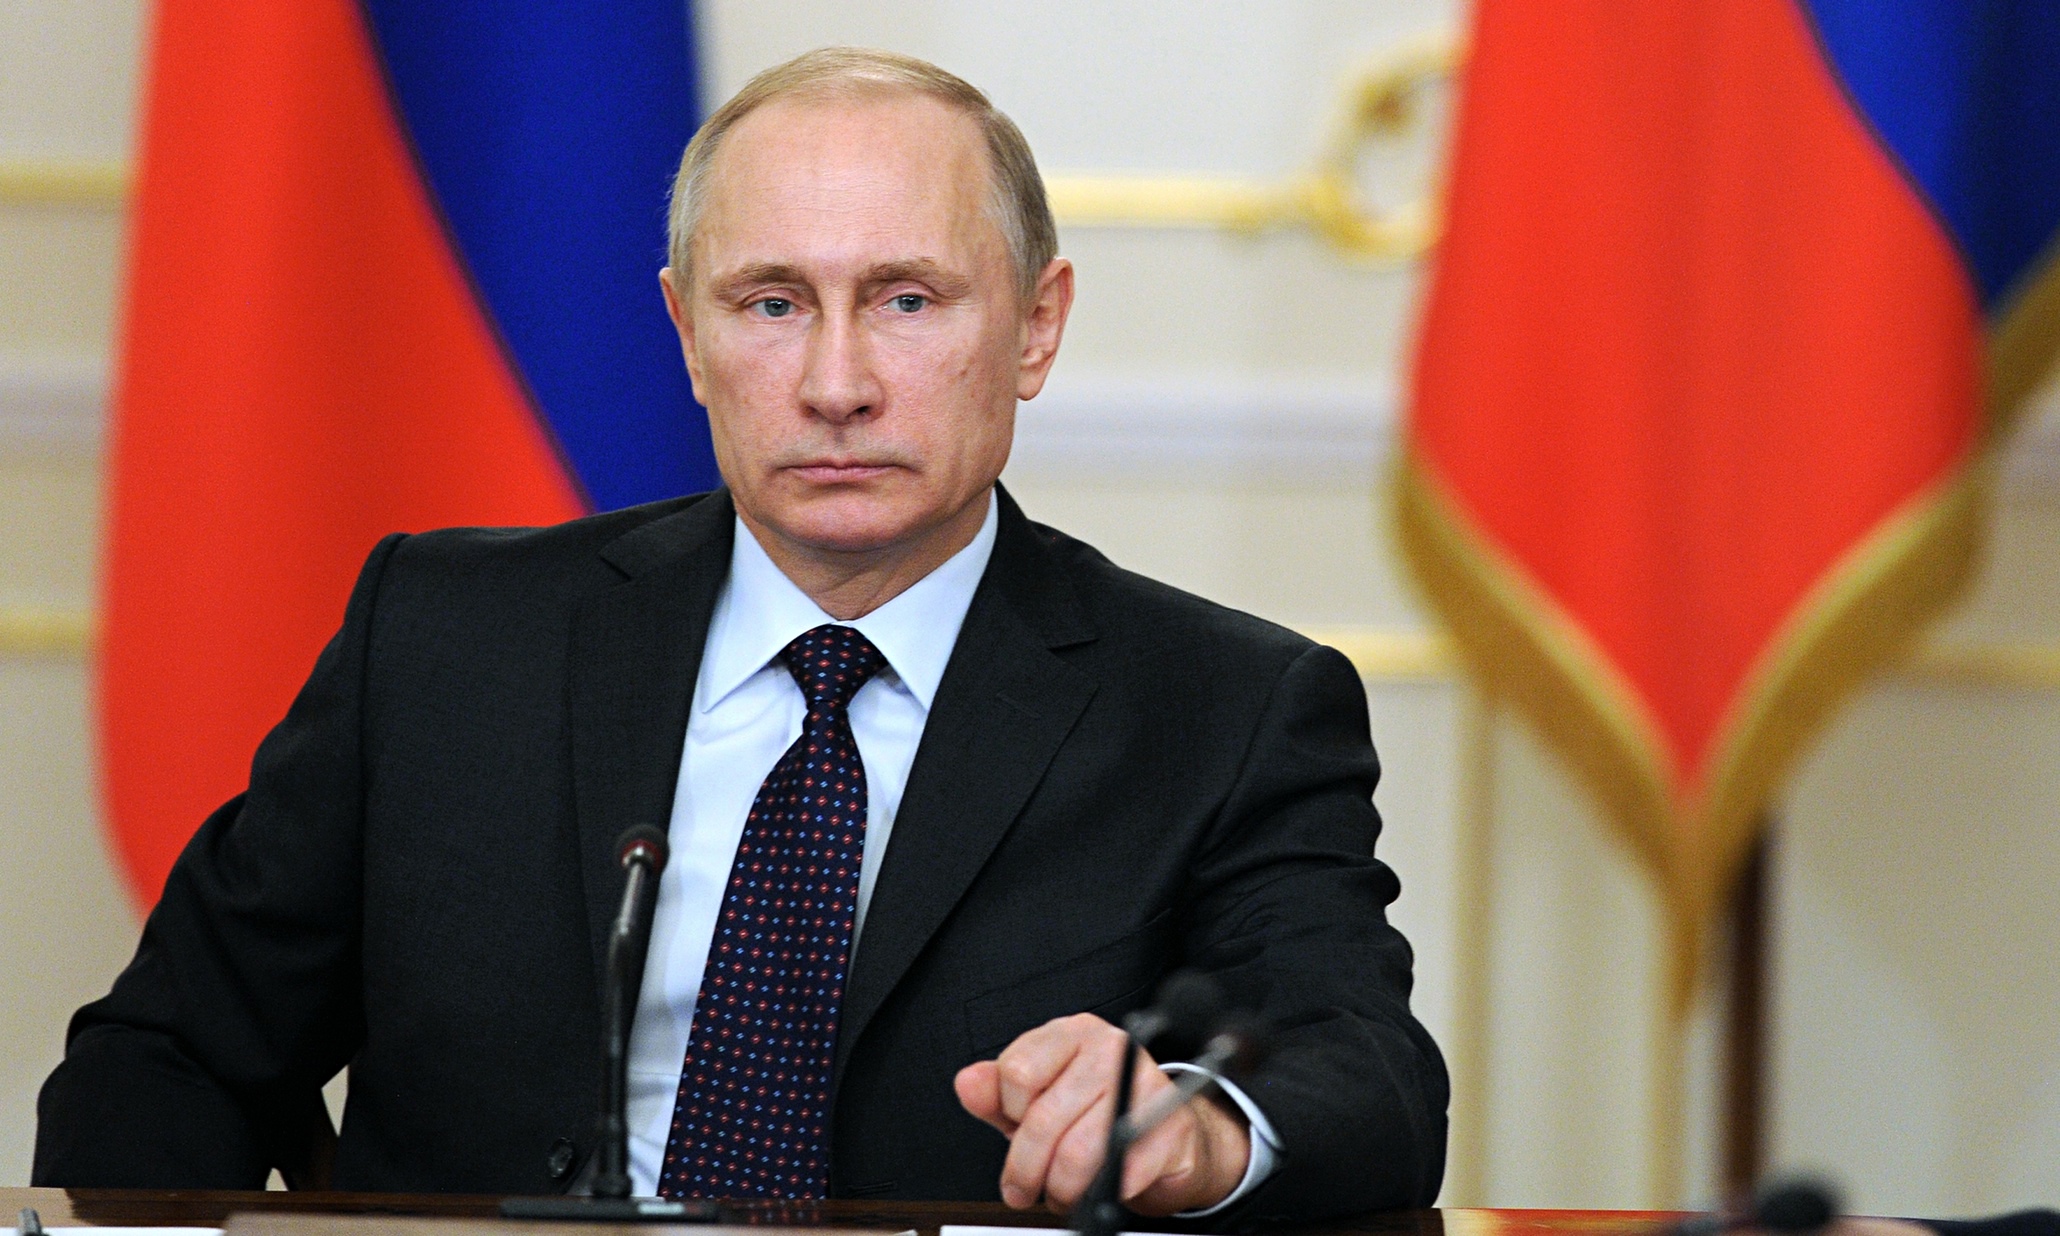 Πούτιν: Όλοι οι πόλεμοι τελειώνουν με διπλωματία